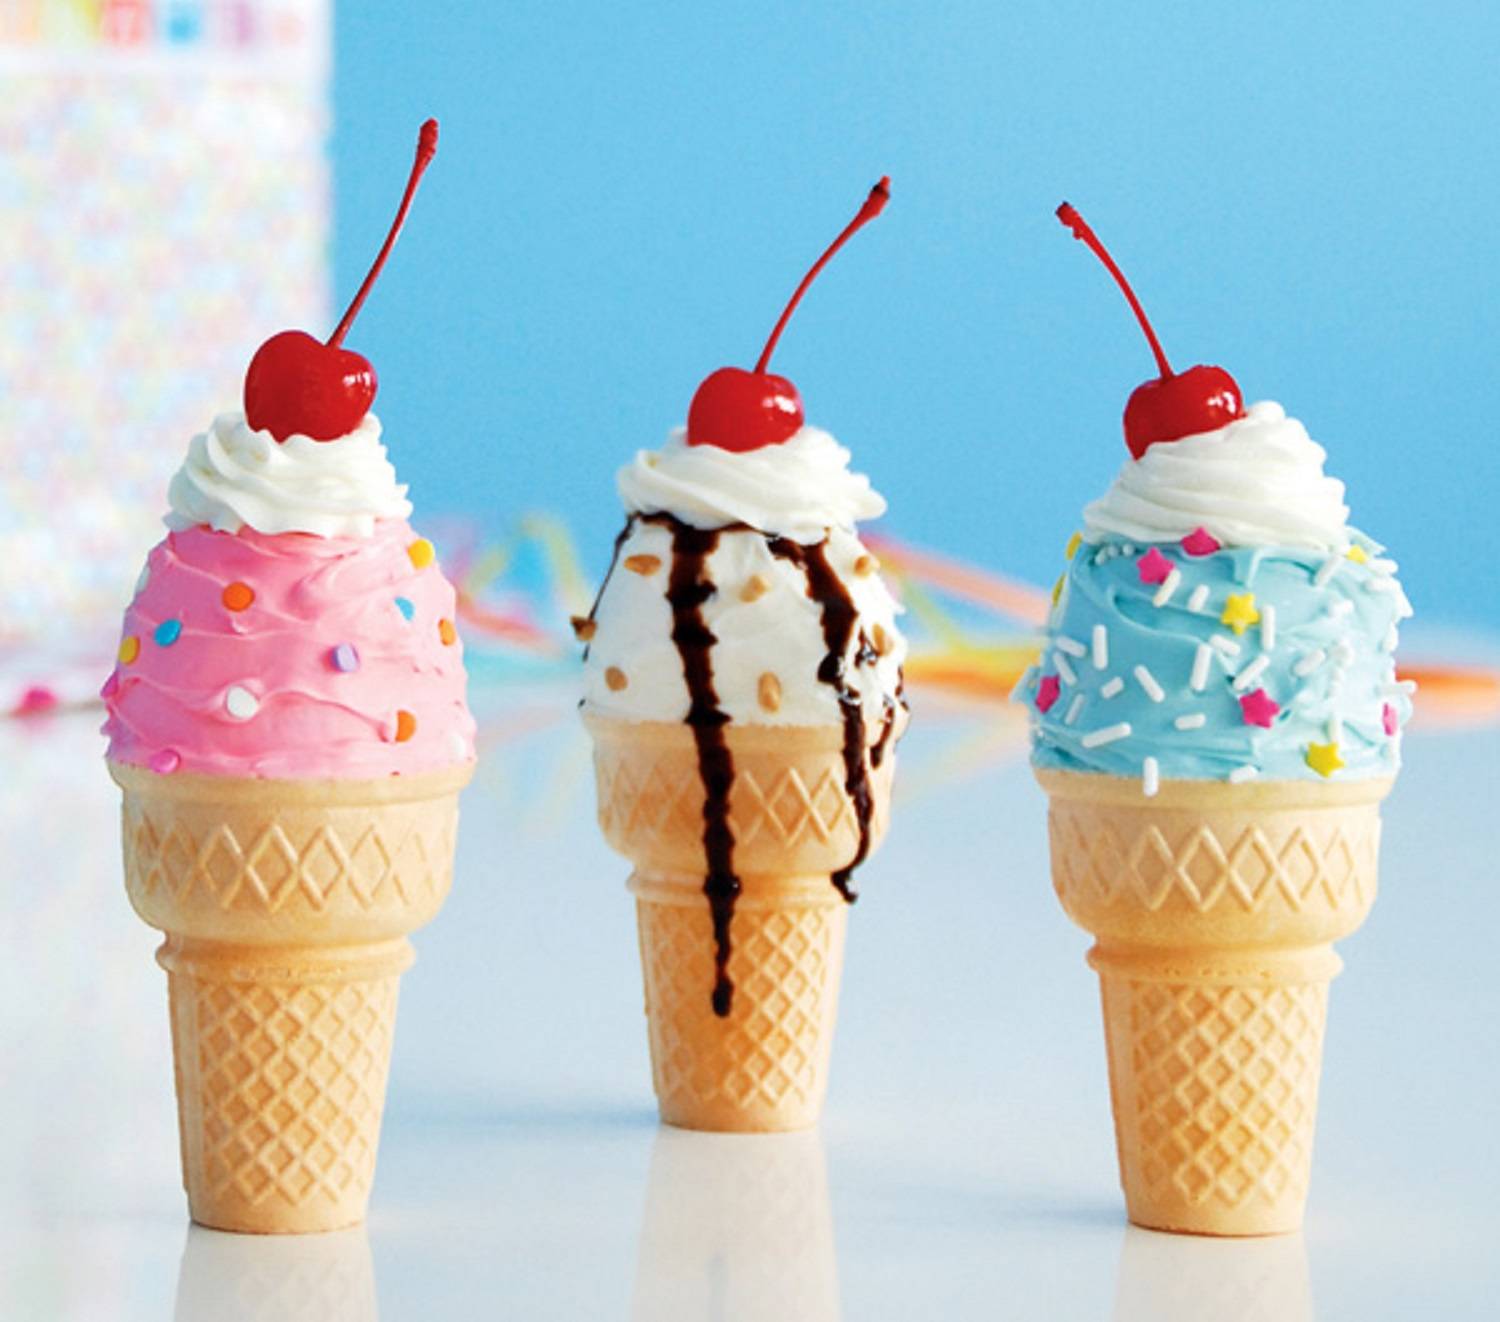 Cần liệt kê nhiều loại kem với đủ loại hương vị để khách hàng có cơ hội thử nghiệm nhiều món.